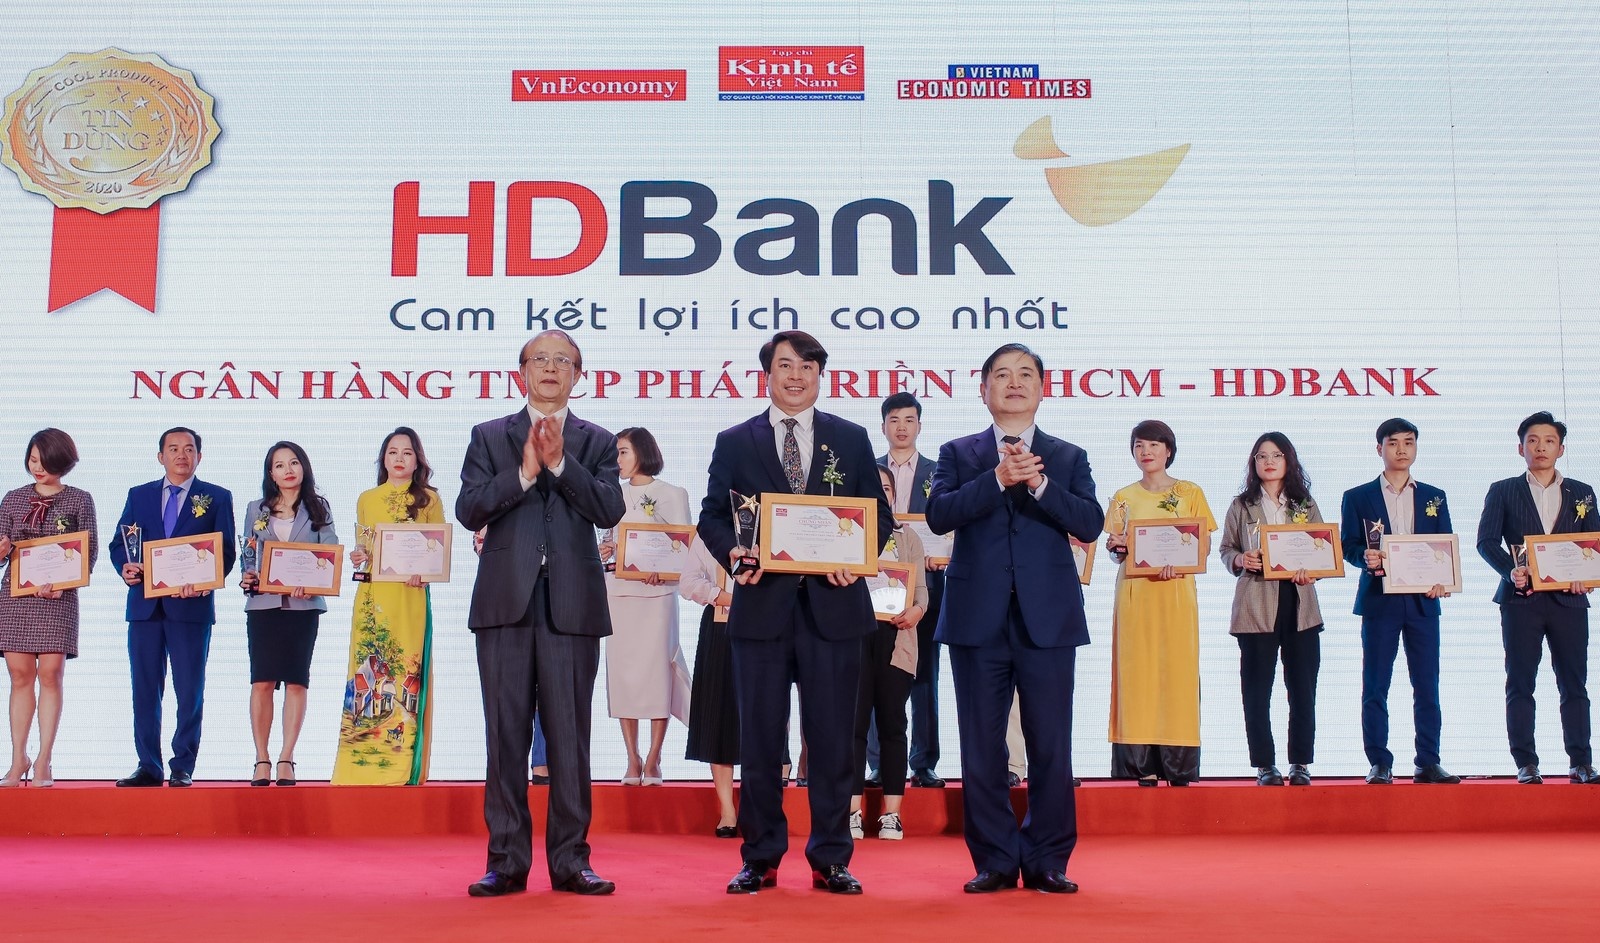 HDBank dẫn đầu thị trường về bán lẻ và SME